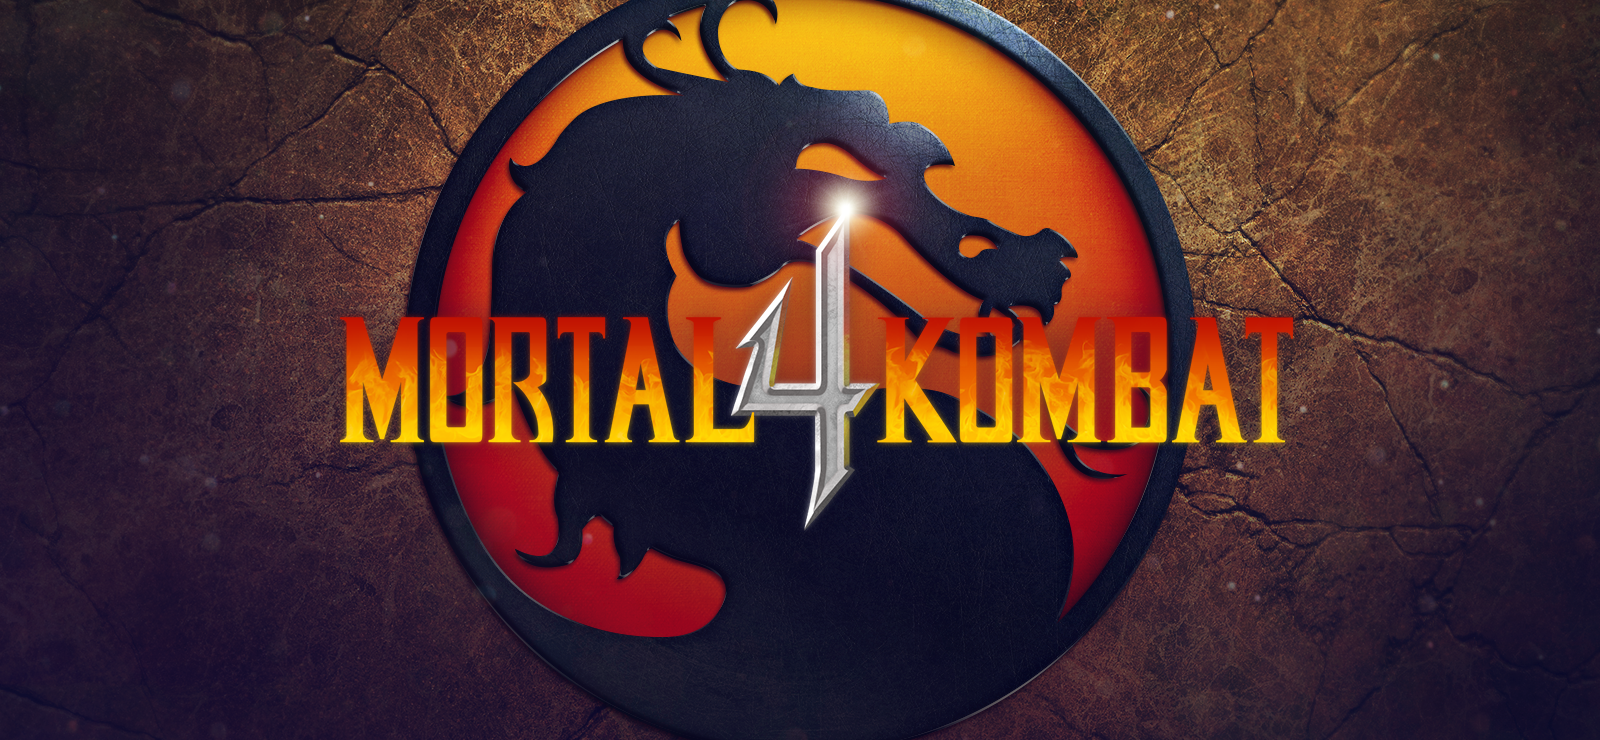 Mortal Kombat 4 - Desciclopédia